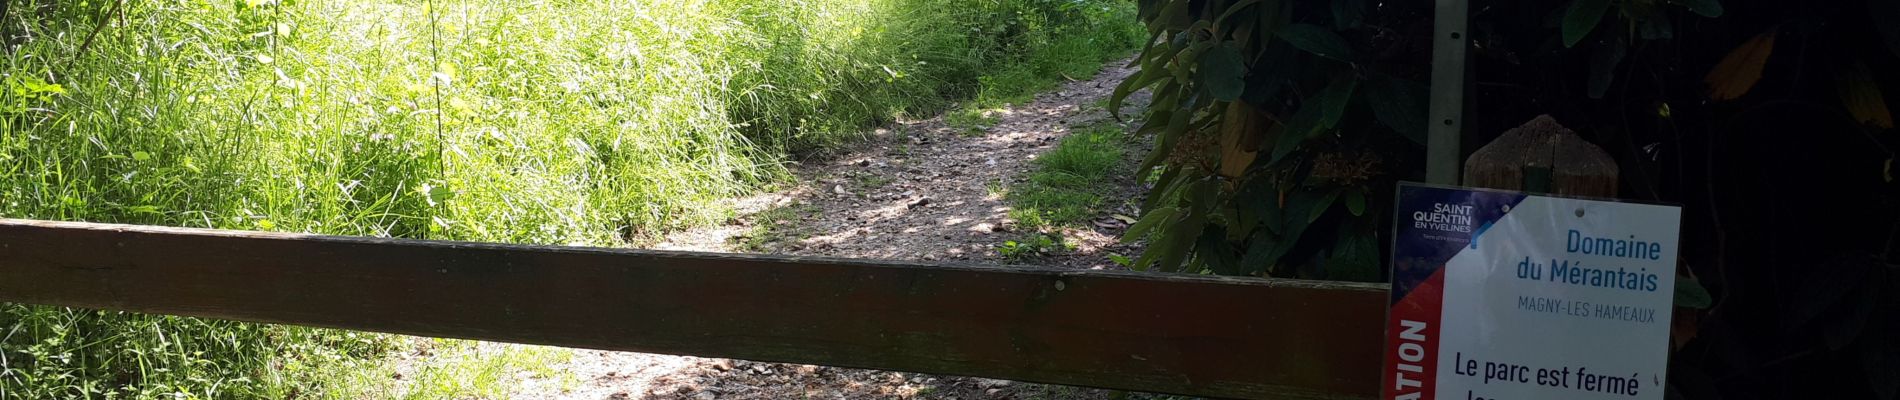 Trail Walking Magny-les-Hameaux - bois des roches - Photo